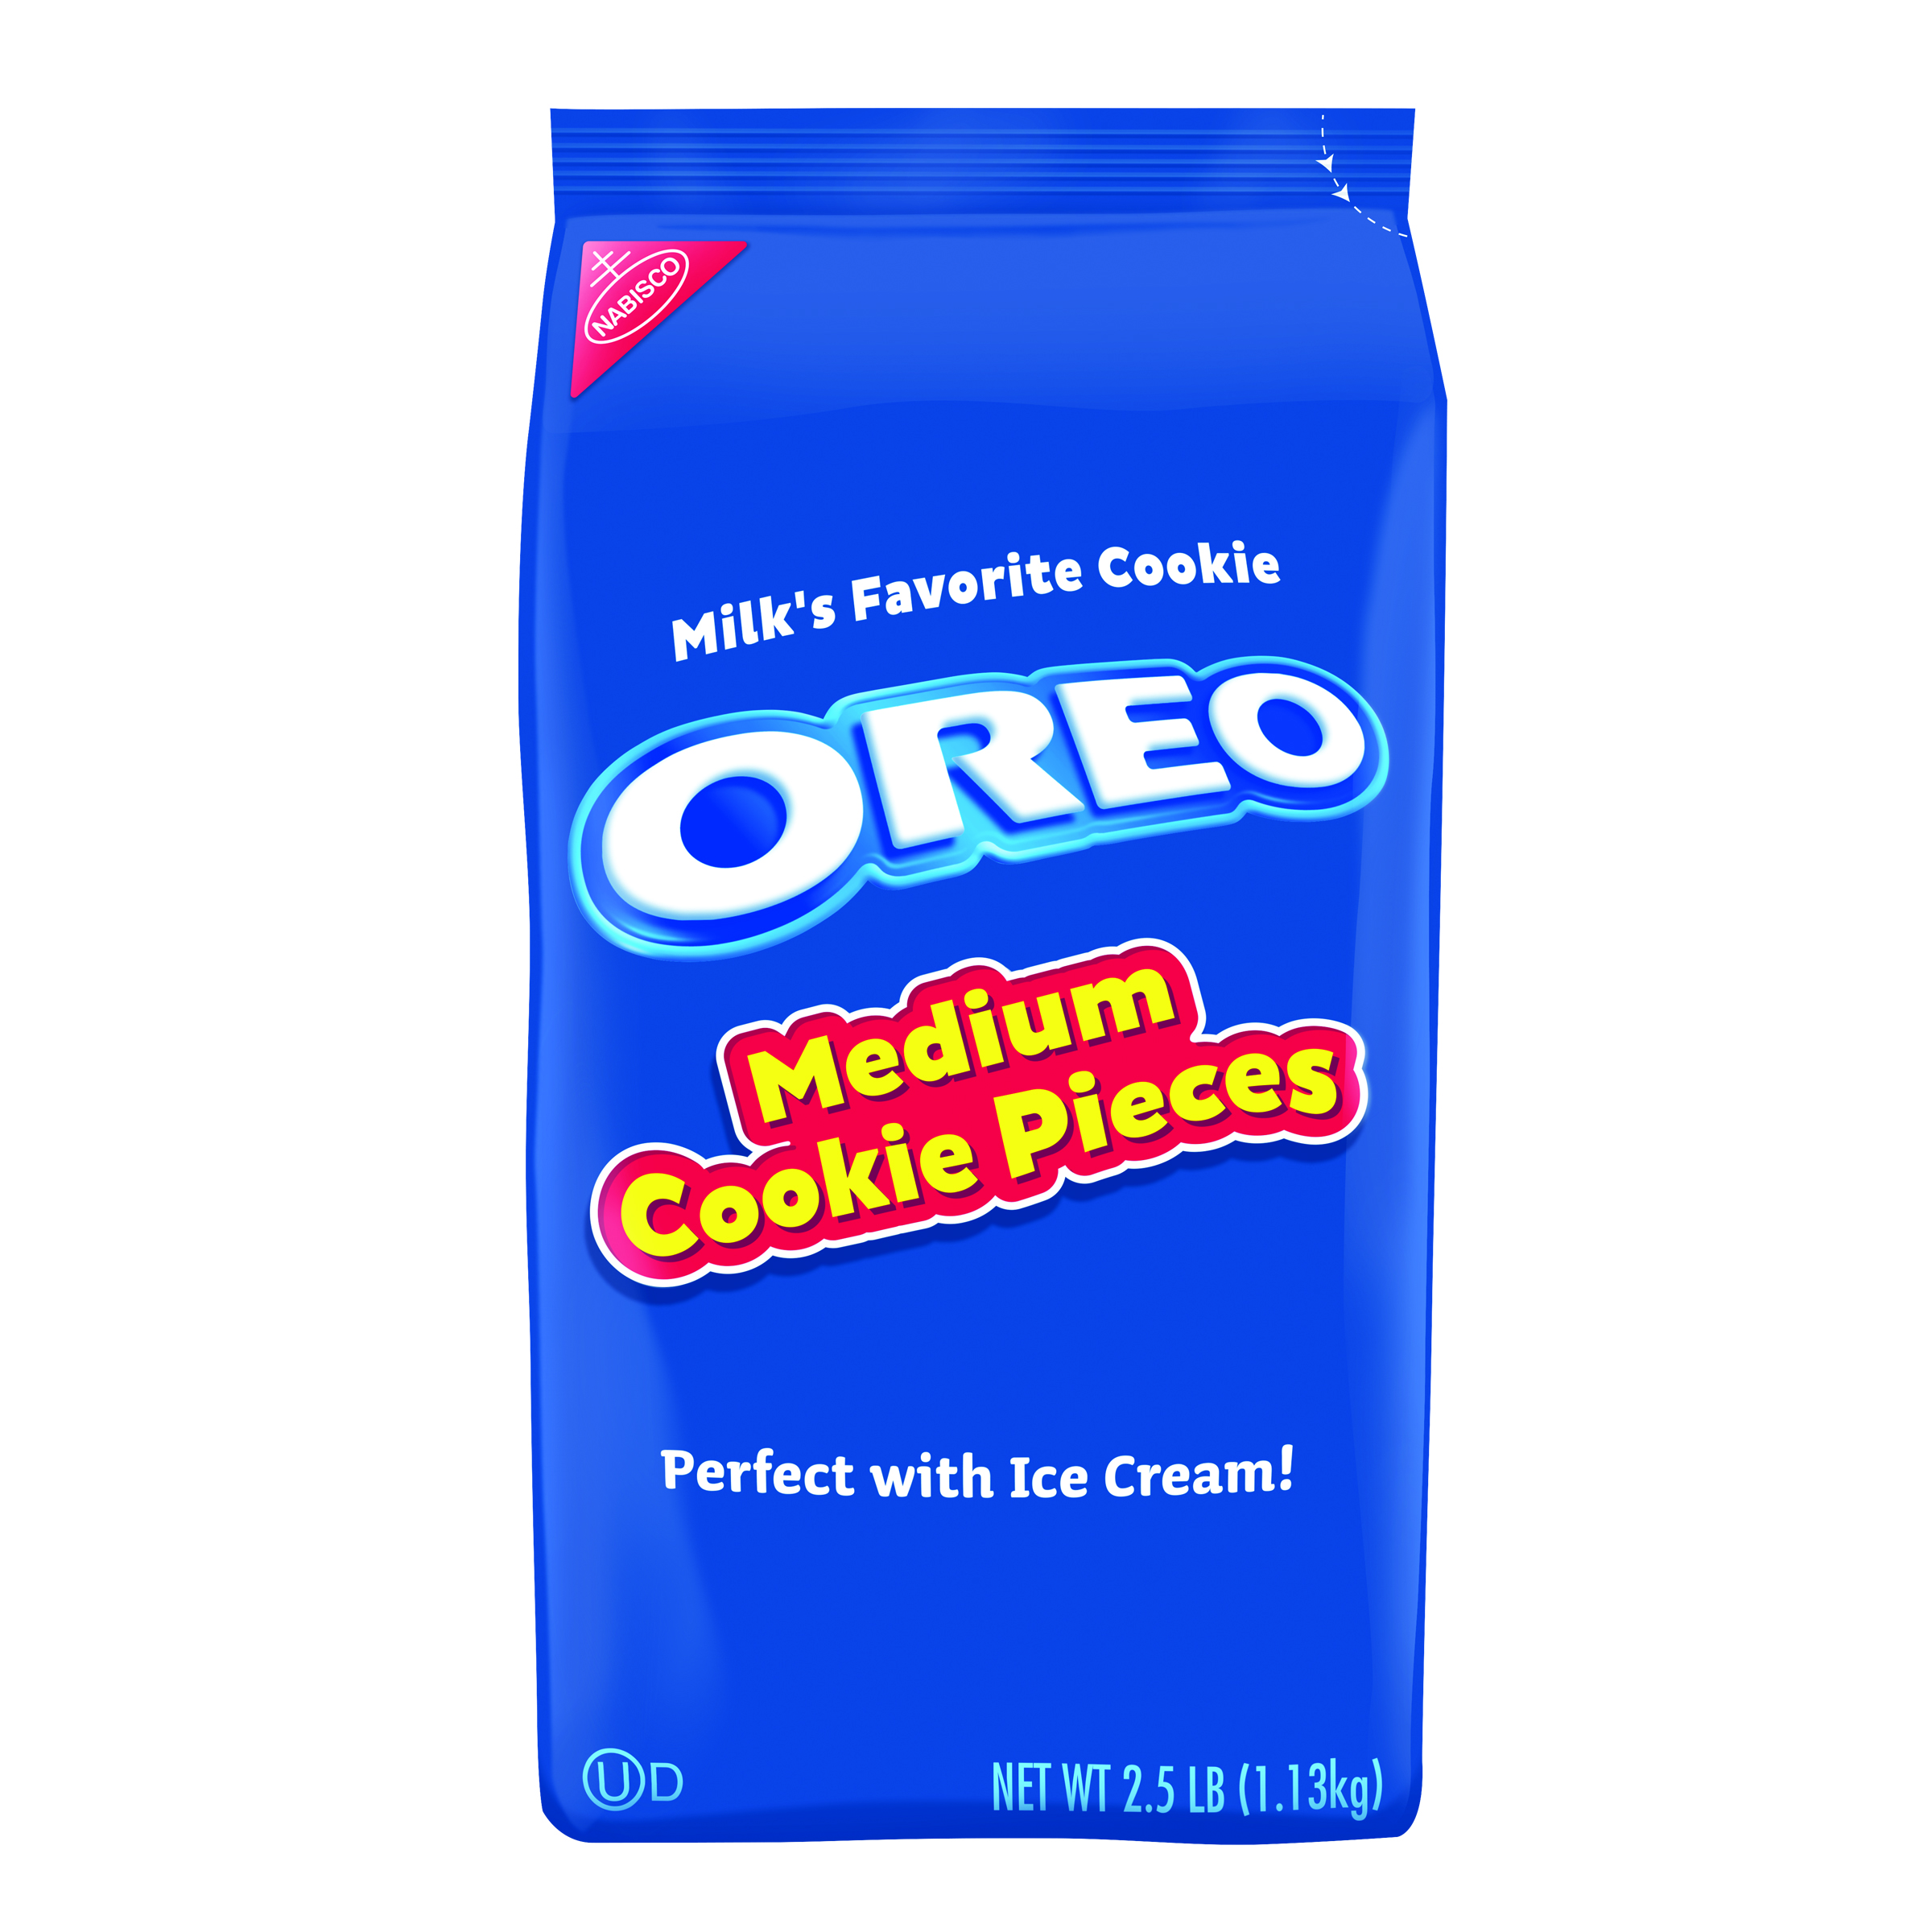 OREO Medium Cookie Pieces 4/2.5LB